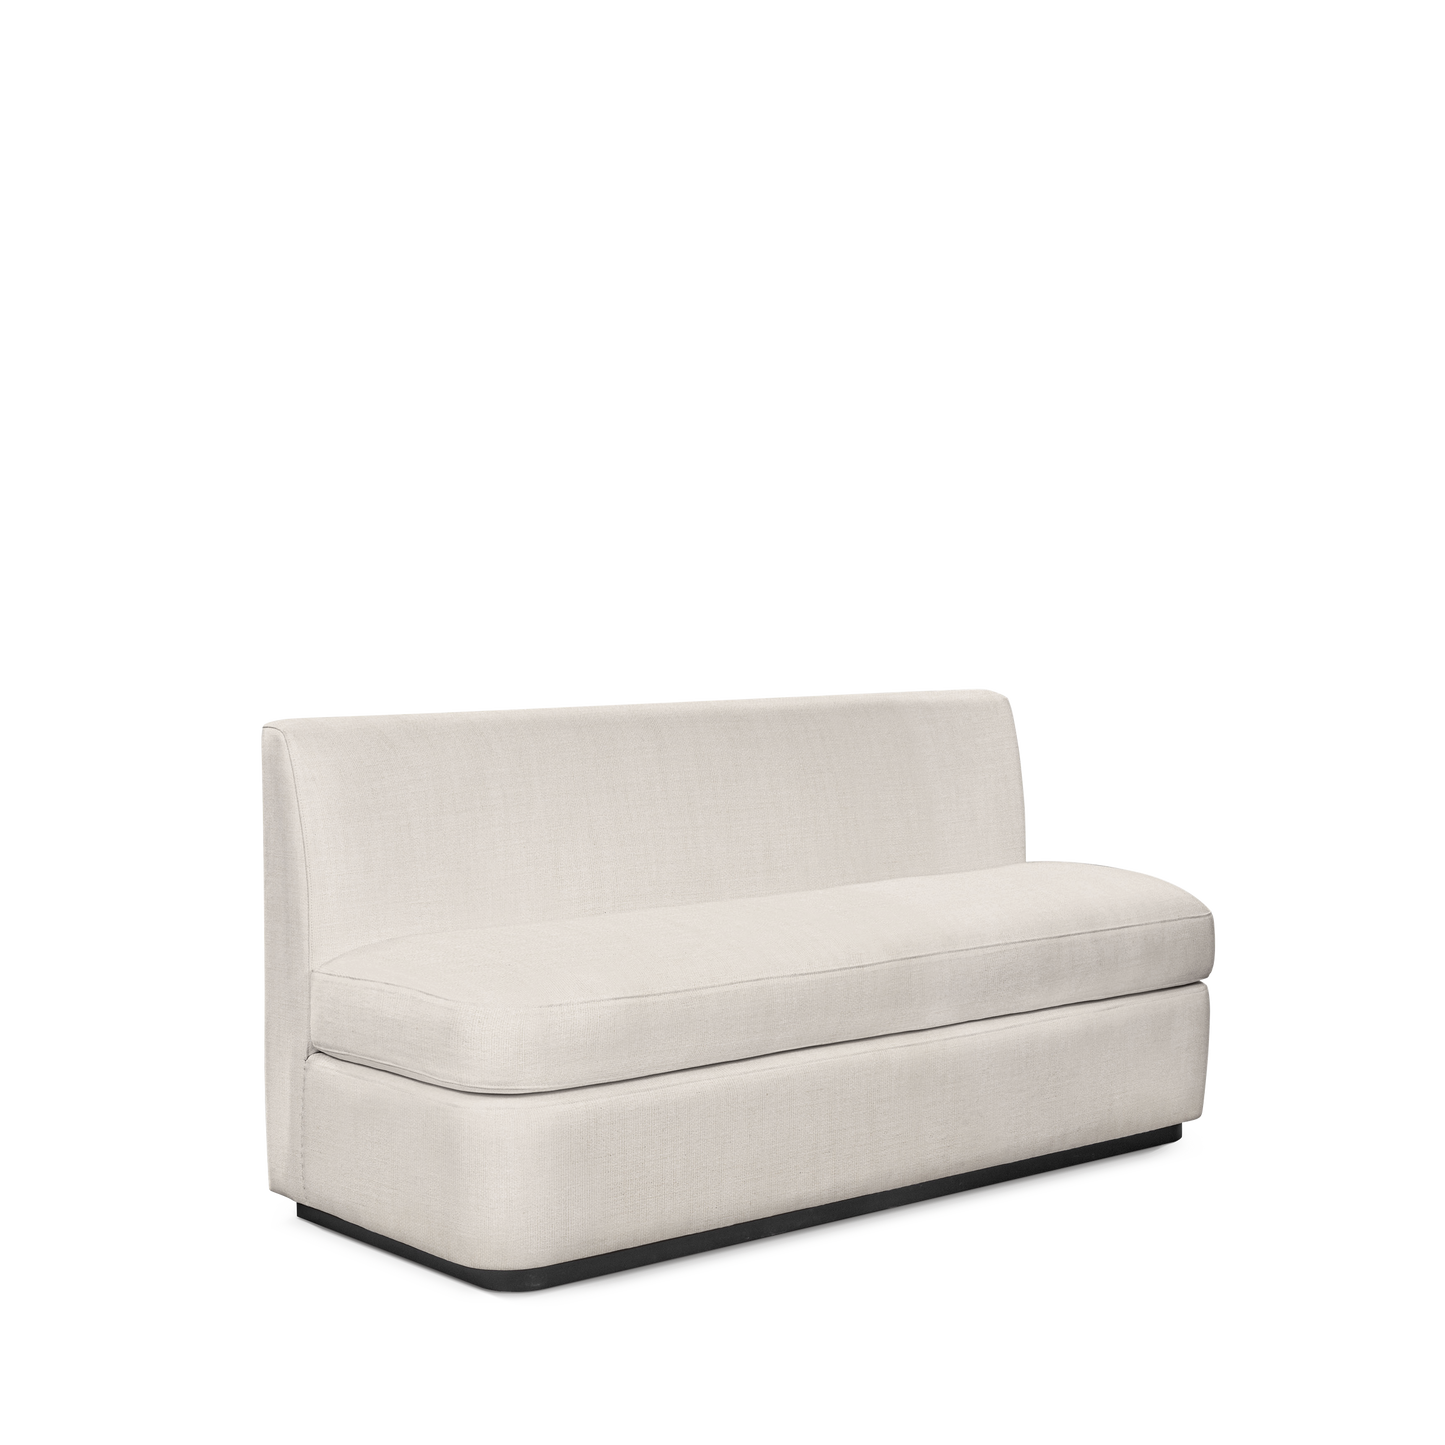  CALMA KITCHEN 3-seater sofa with light grey textile